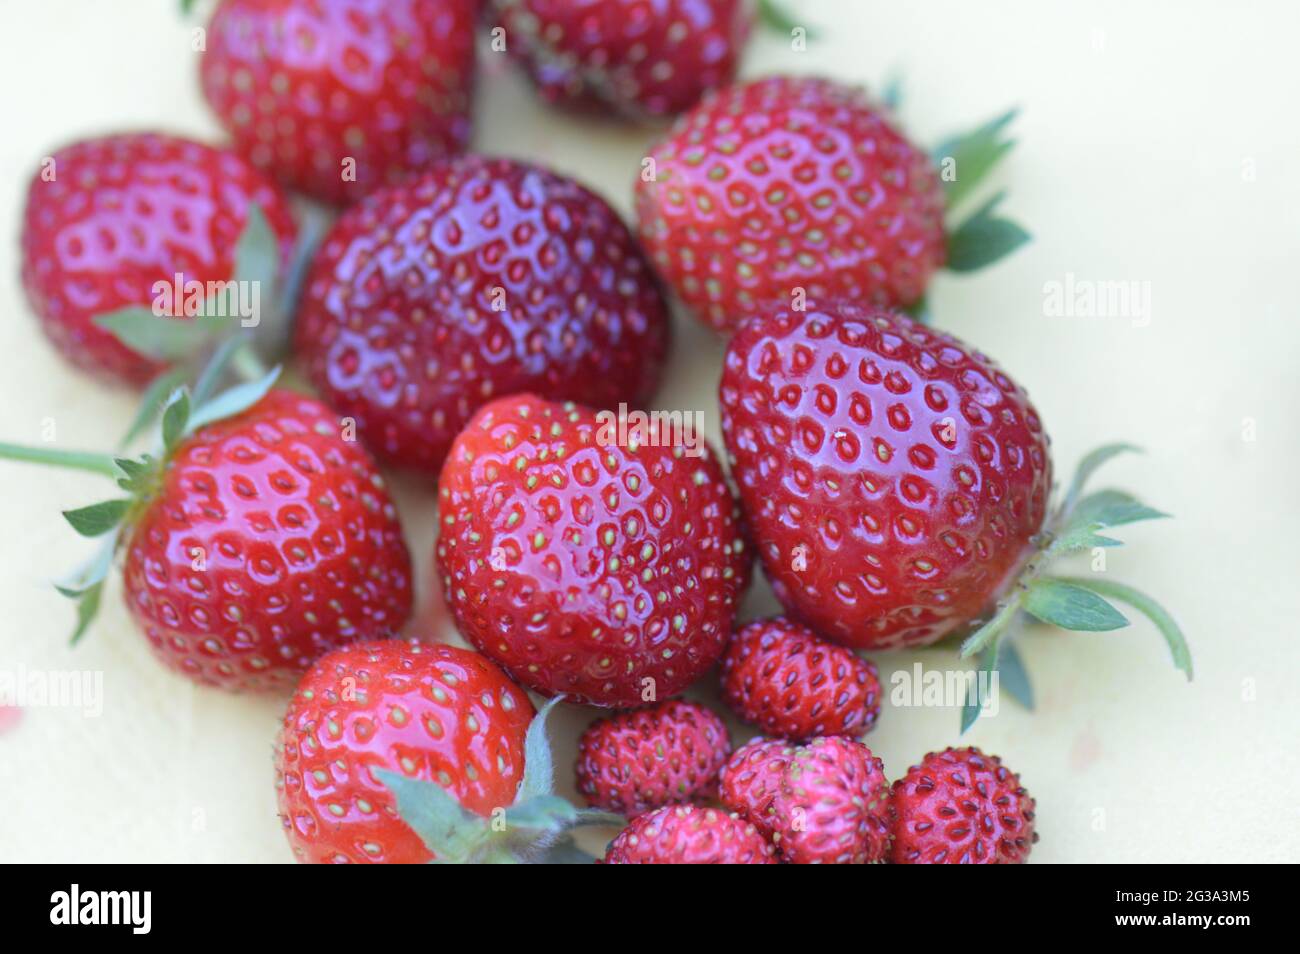 Erdbeere - verschiedene Sorten herrlicher roter frisch gepflückter Früchte aus dem eigenen Garten in Nahaufnahme auf gelber Serviette Foto Stock